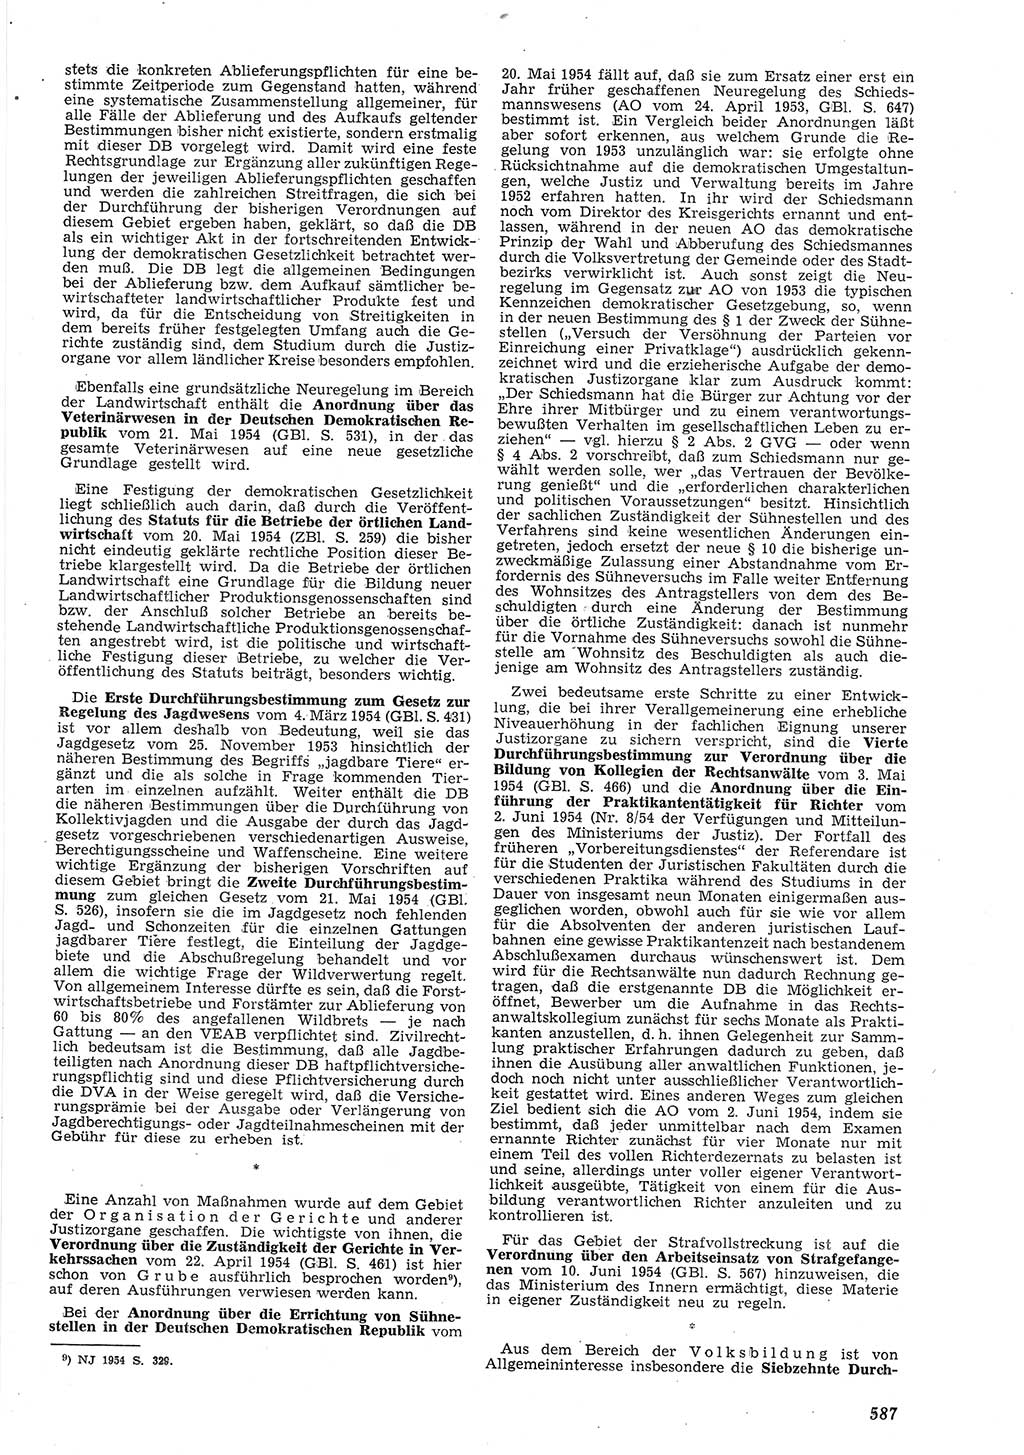 Neue Justiz (NJ), Zeitschrift für Recht und Rechtswissenschaft [Deutsche Demokratische Republik (DDR)], 8. Jahrgang 1954, Seite 587 (NJ DDR 1954, S. 587)